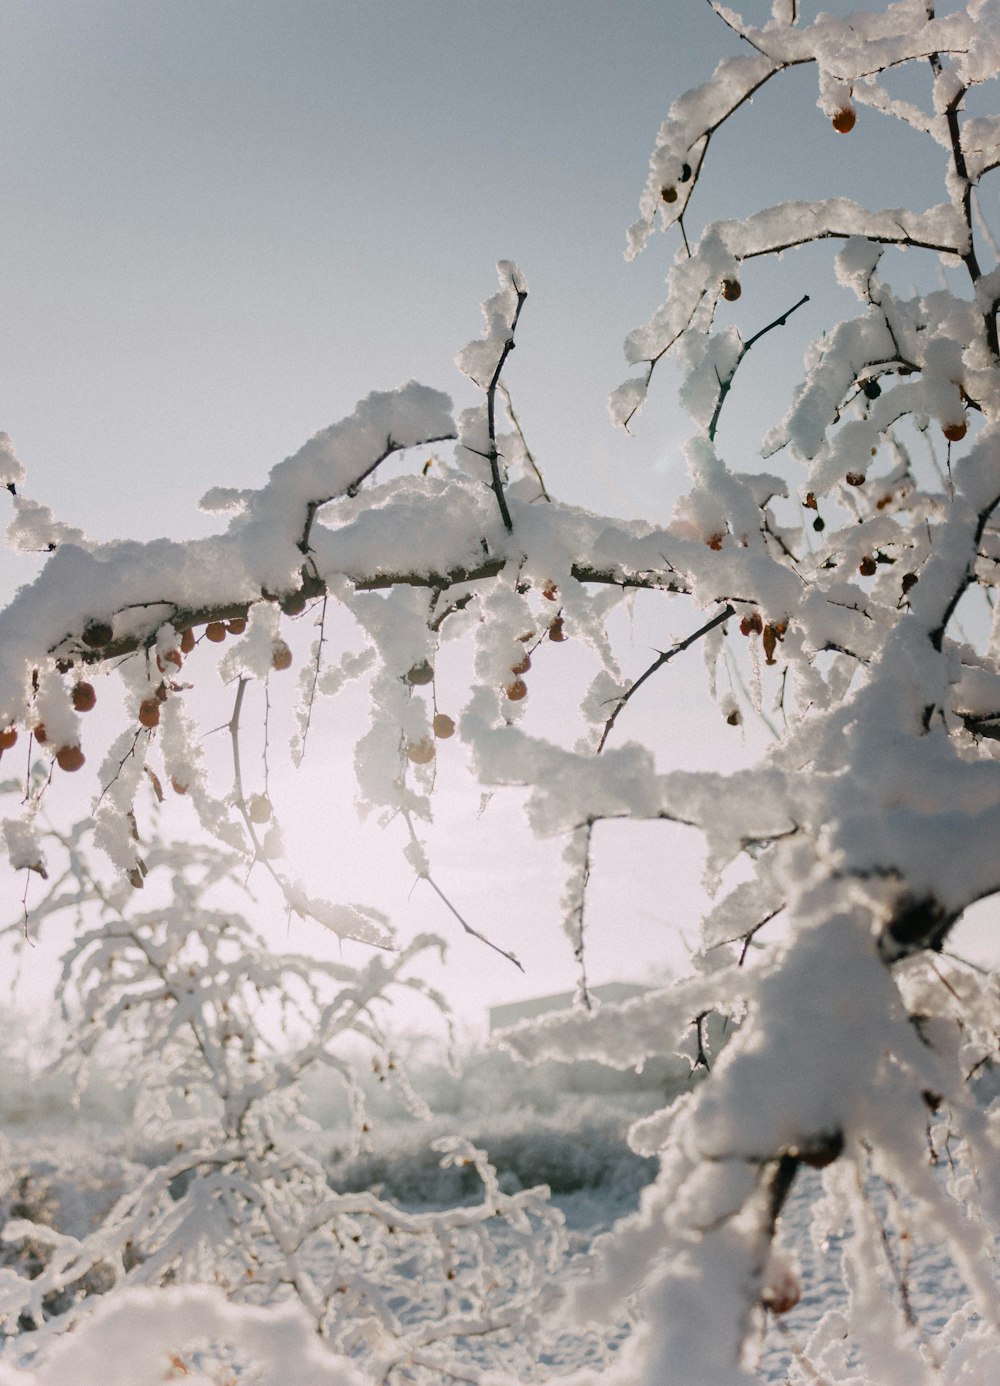 雪に覆われた木の枝にたくさんの雪が積もっている